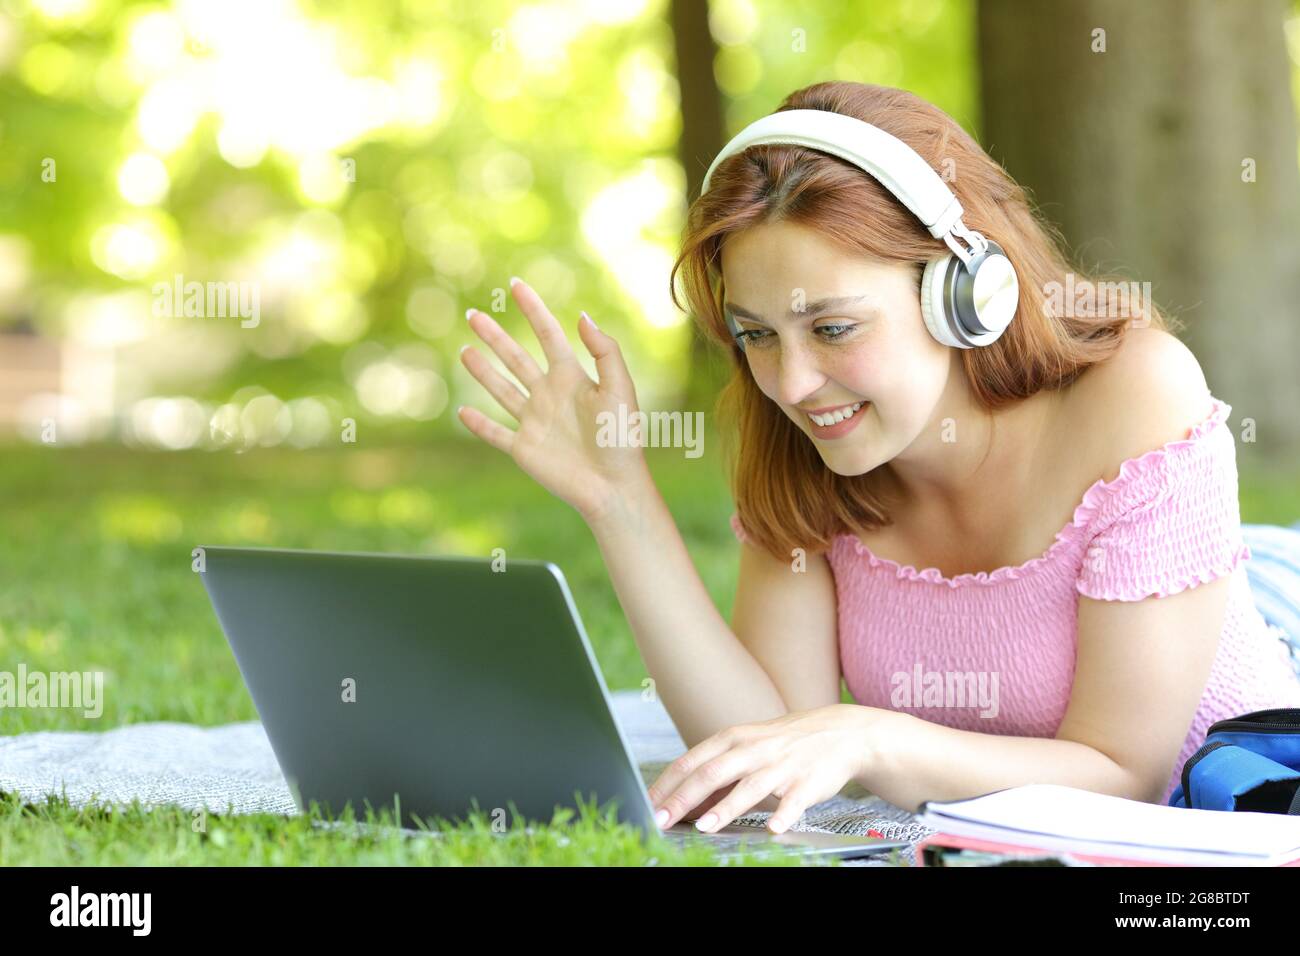 Glückliche Frau, die online mit einem Laptop auf dem Rasen in einem Park Videos macht Stockfoto